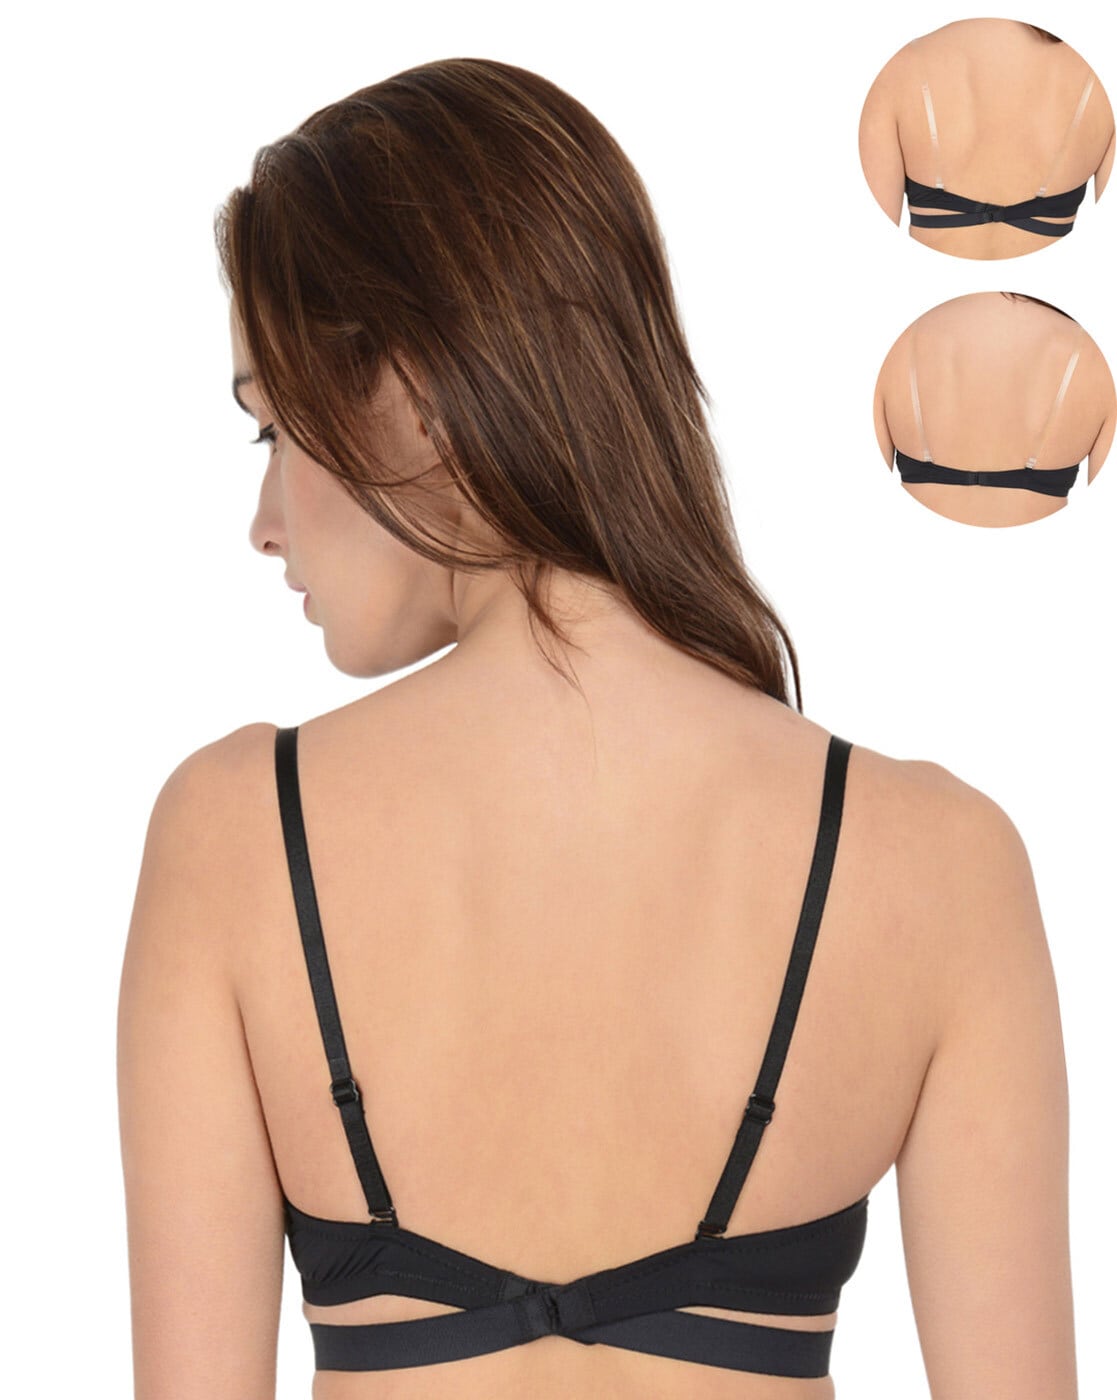 Buy Prettybold Women's Lace Bra - Black (34C) Online